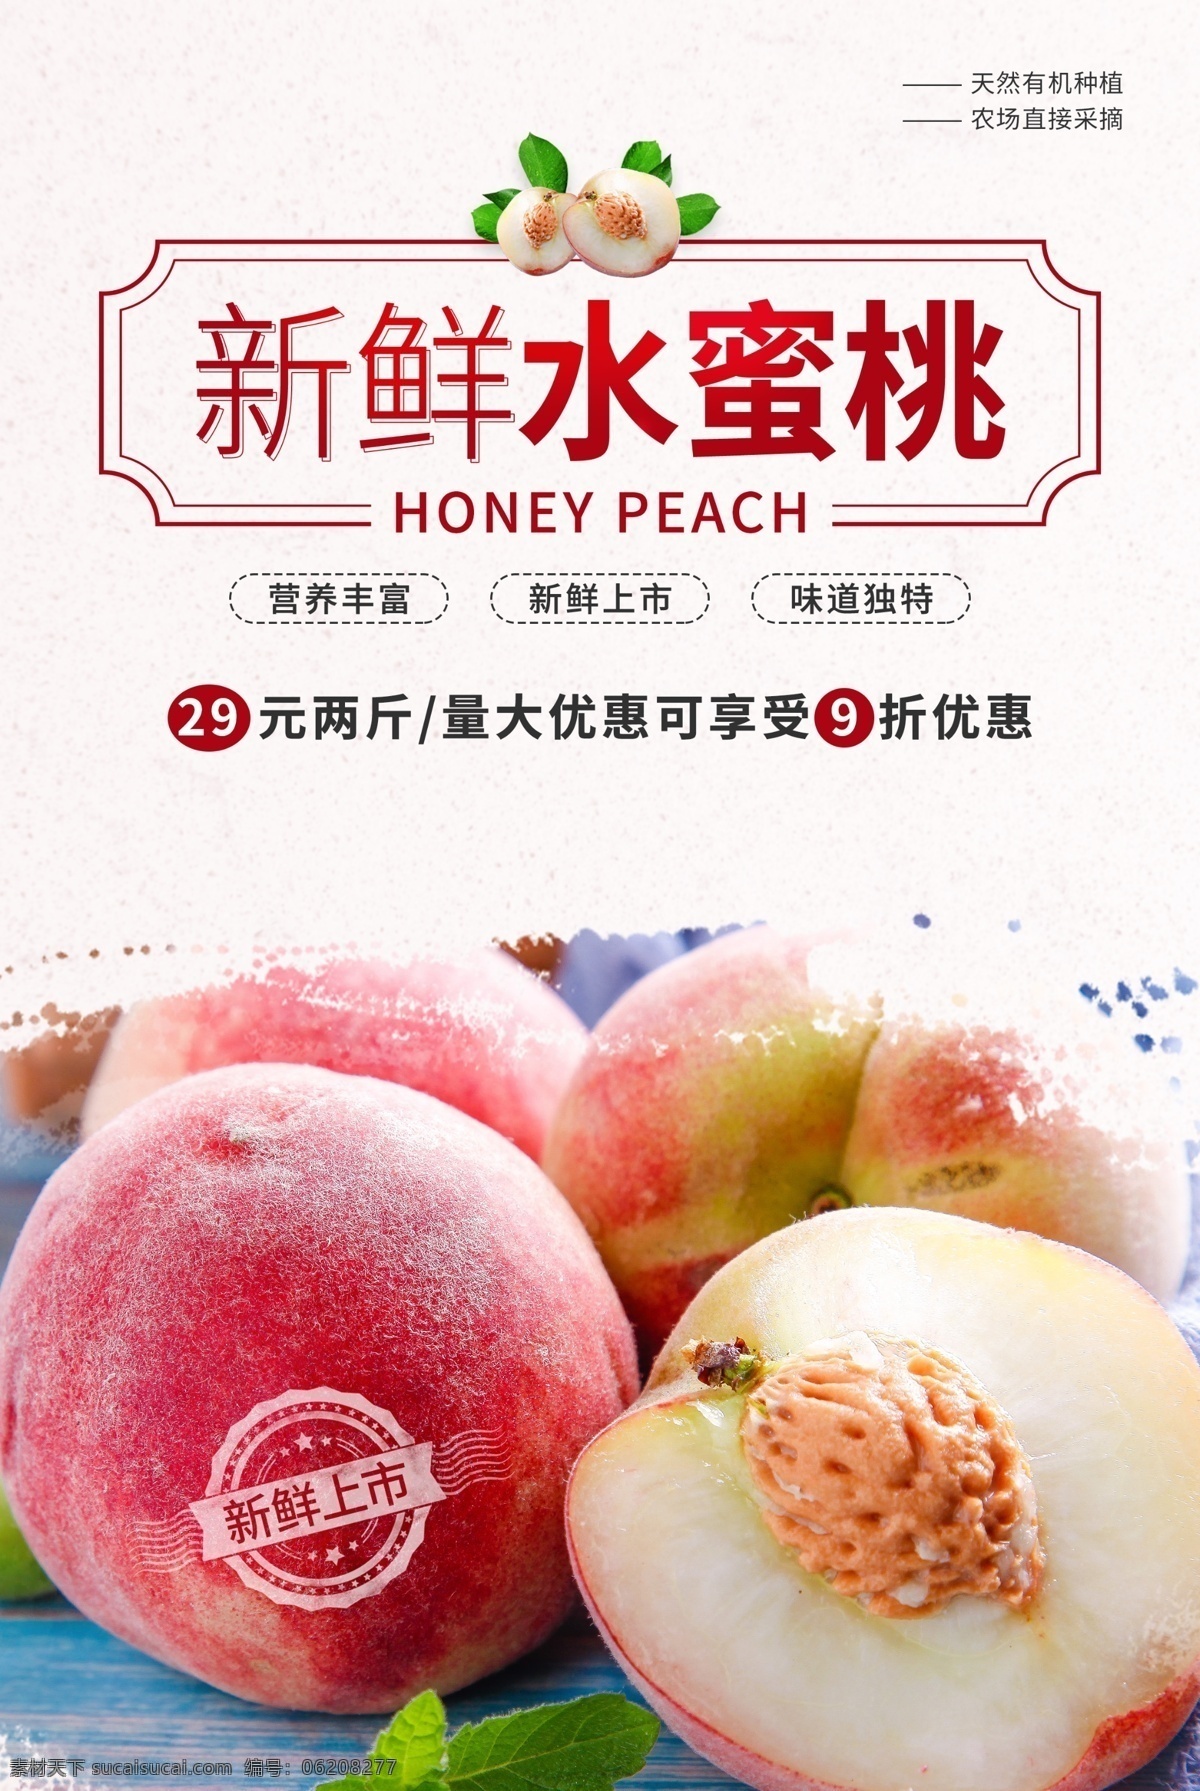 水蜜桃 水果 促销活动 宣传海报 促销 活动 宣传 海报 饮料 饮品 甜品 类